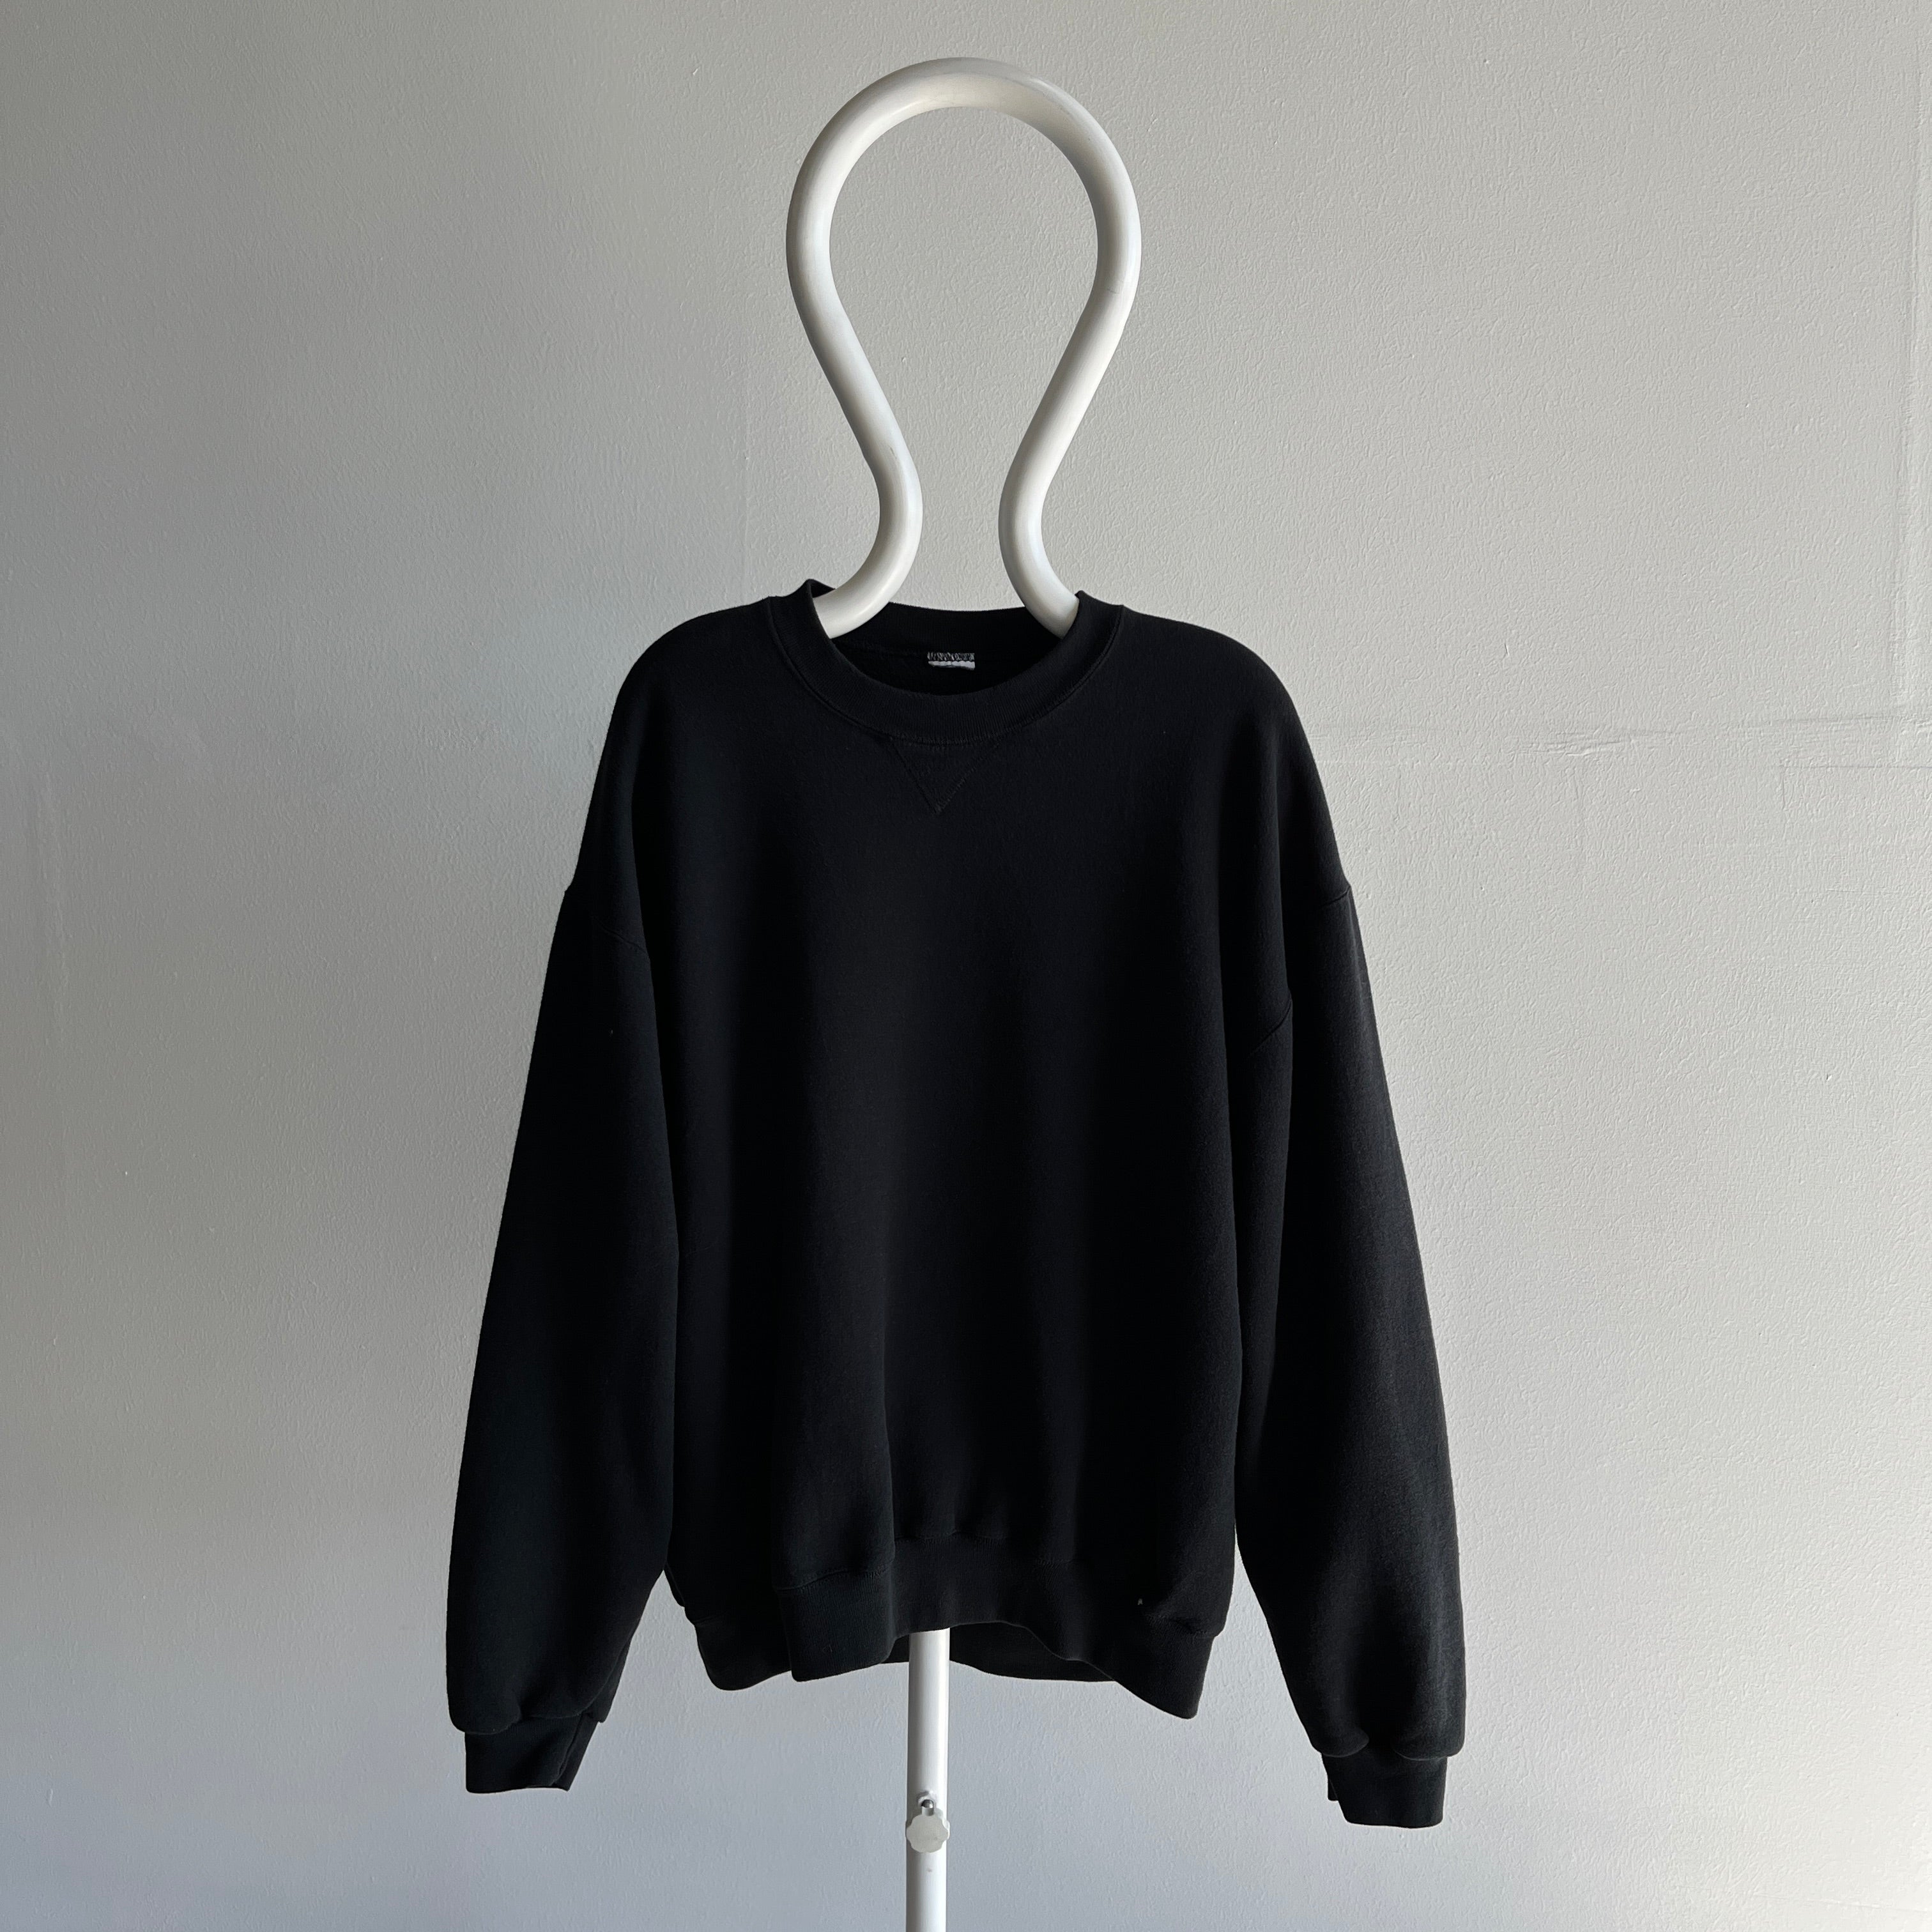 1990s Larger Blank Black Single V Sweatshirt with Very Little Wear